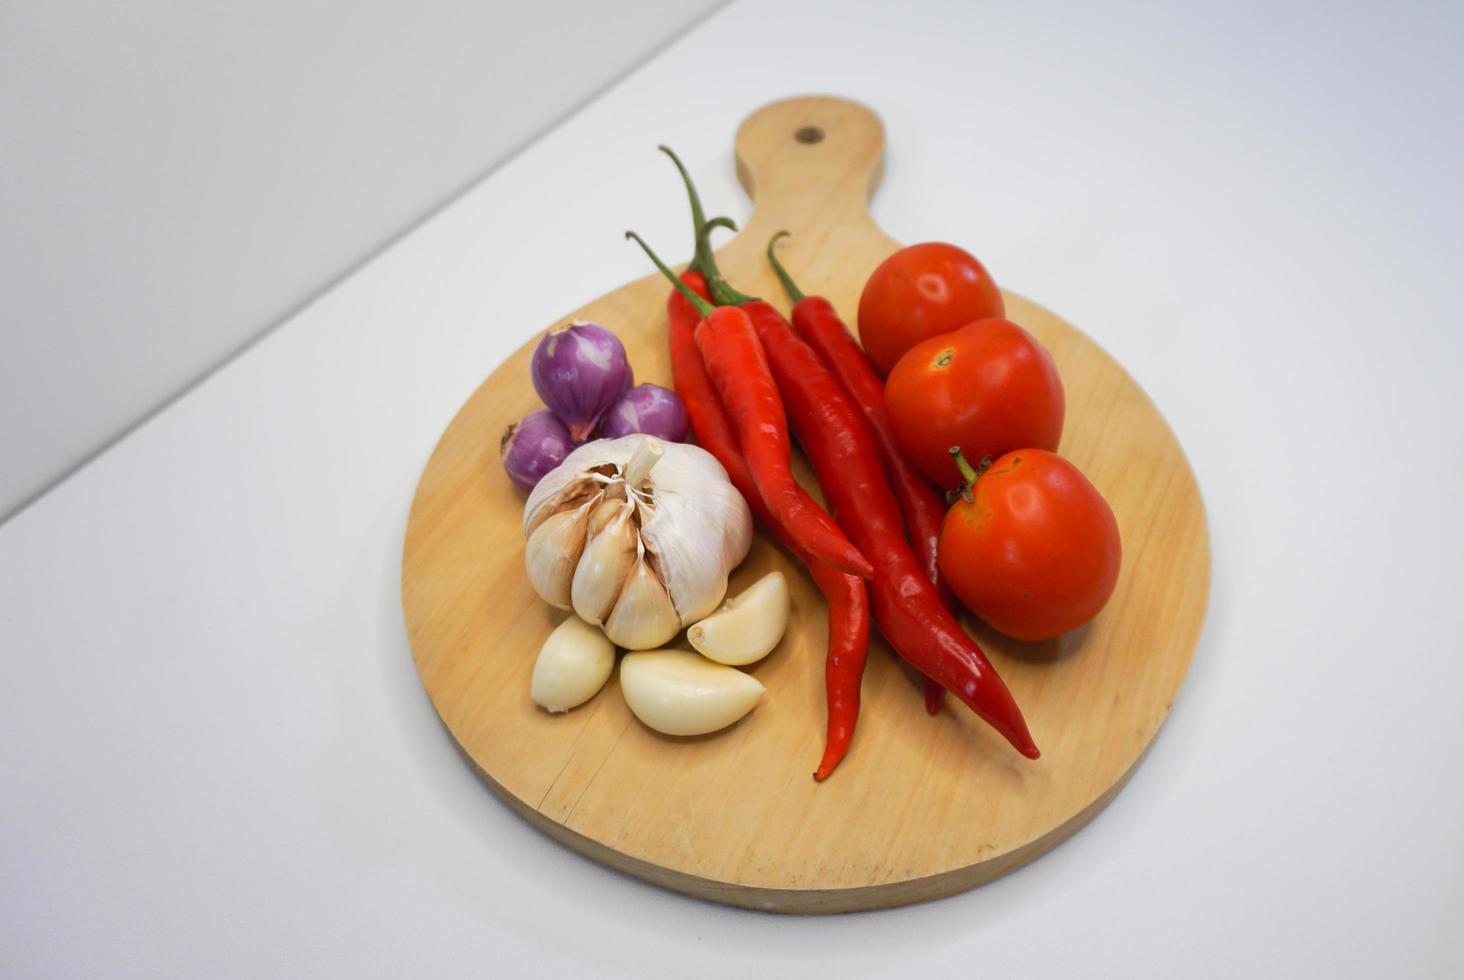 ail, le Chili, rouge oignon et tomates sur une en bois Coaster, haute angle tir. photo